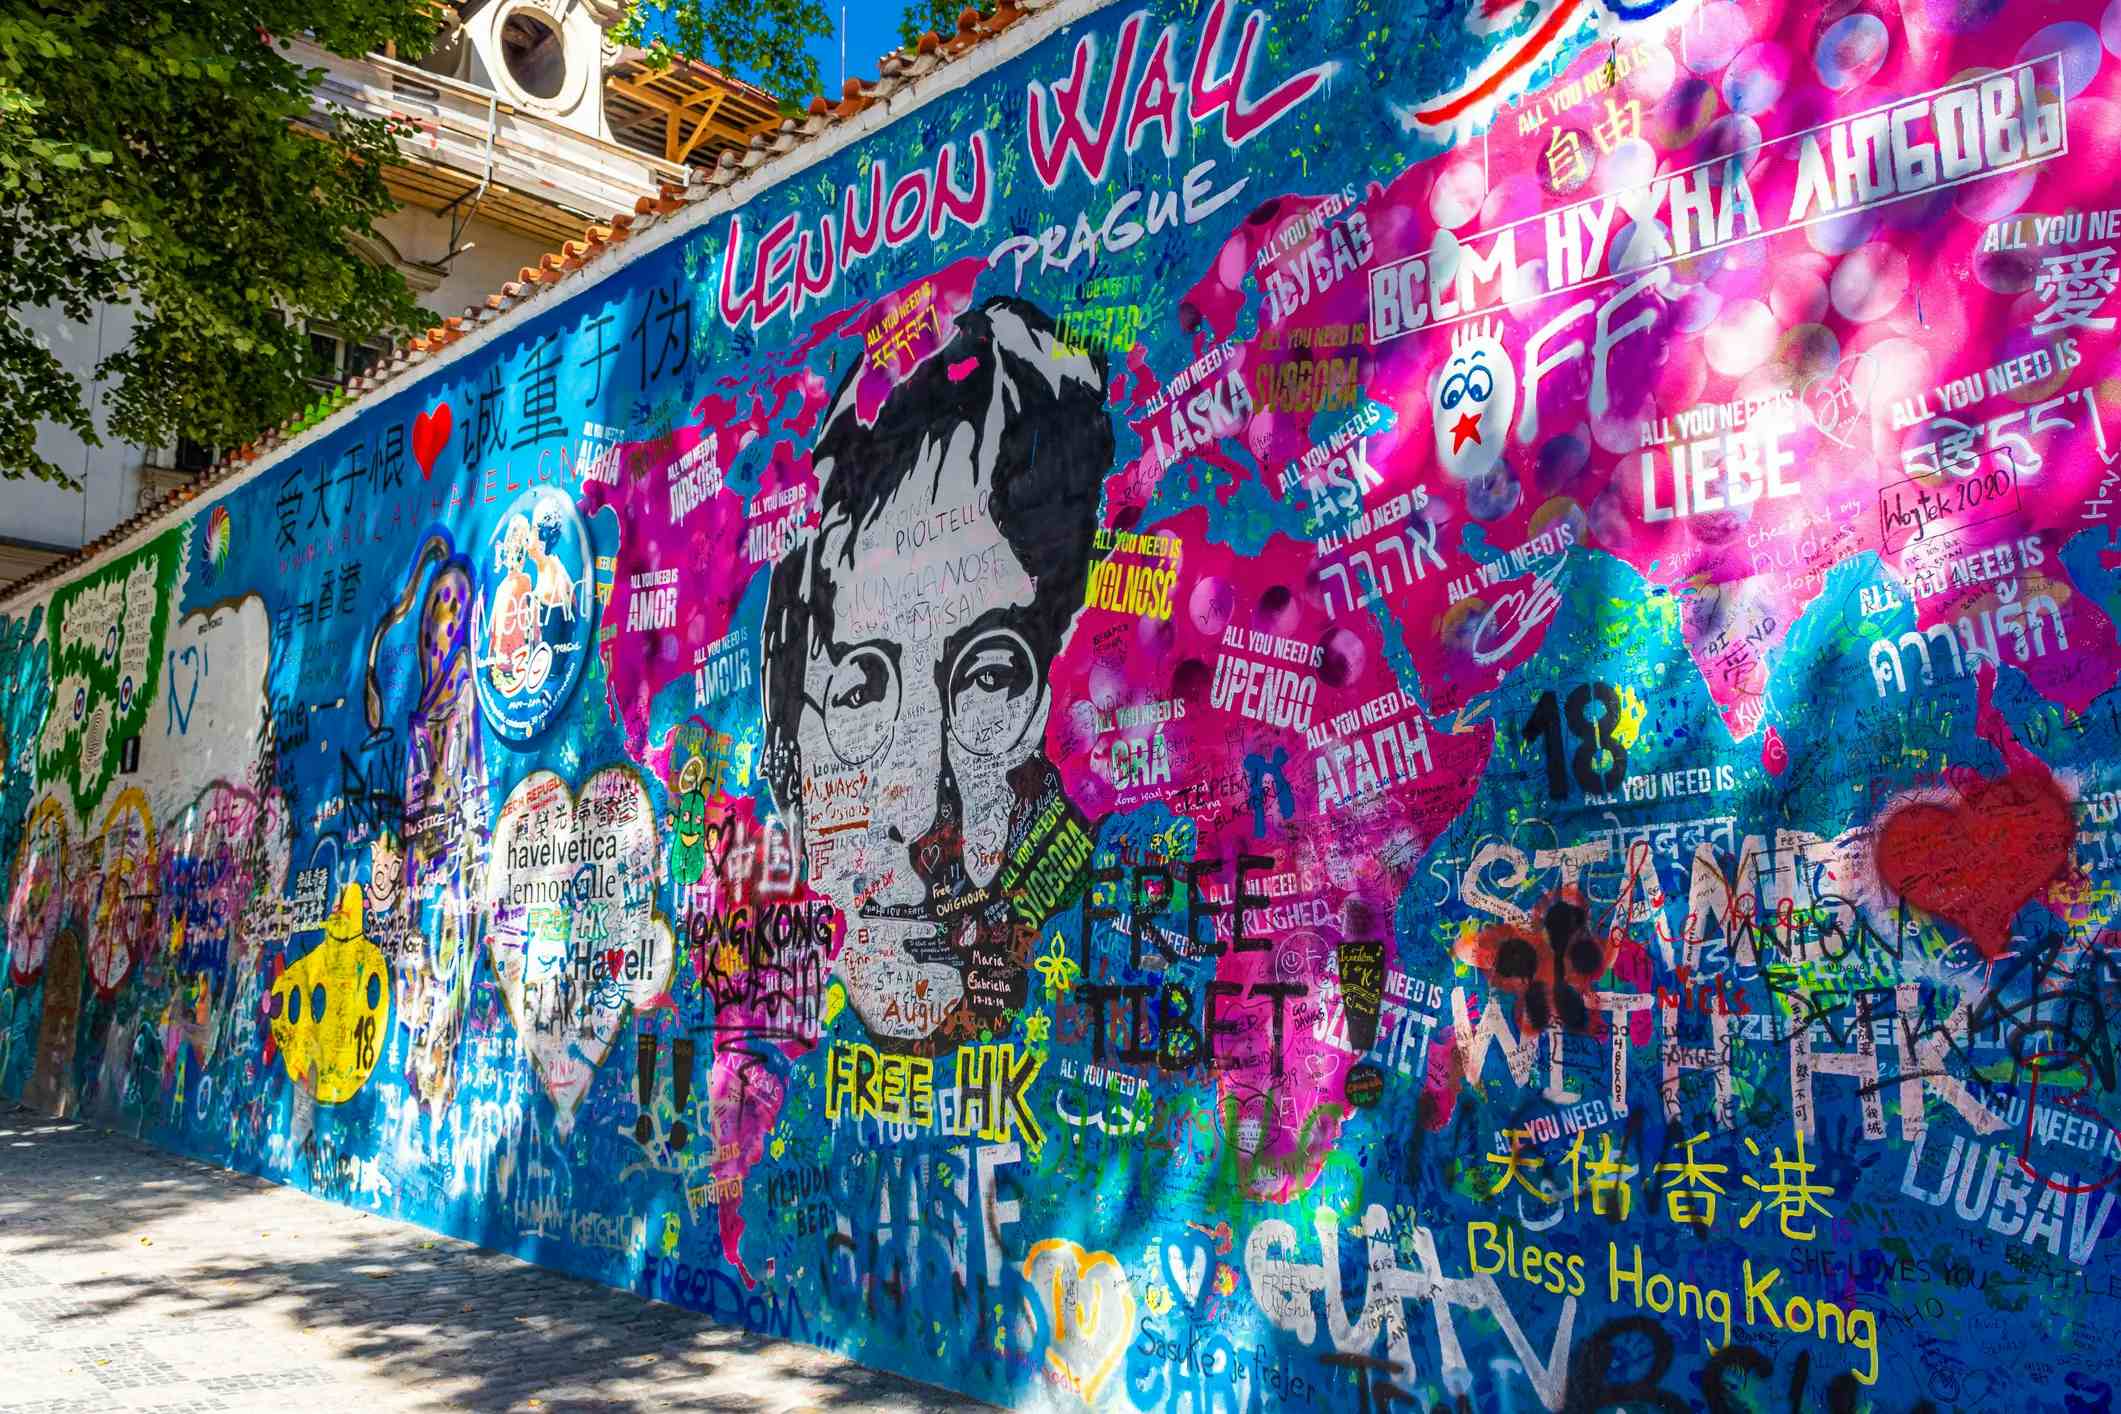 John Lennon Wall image